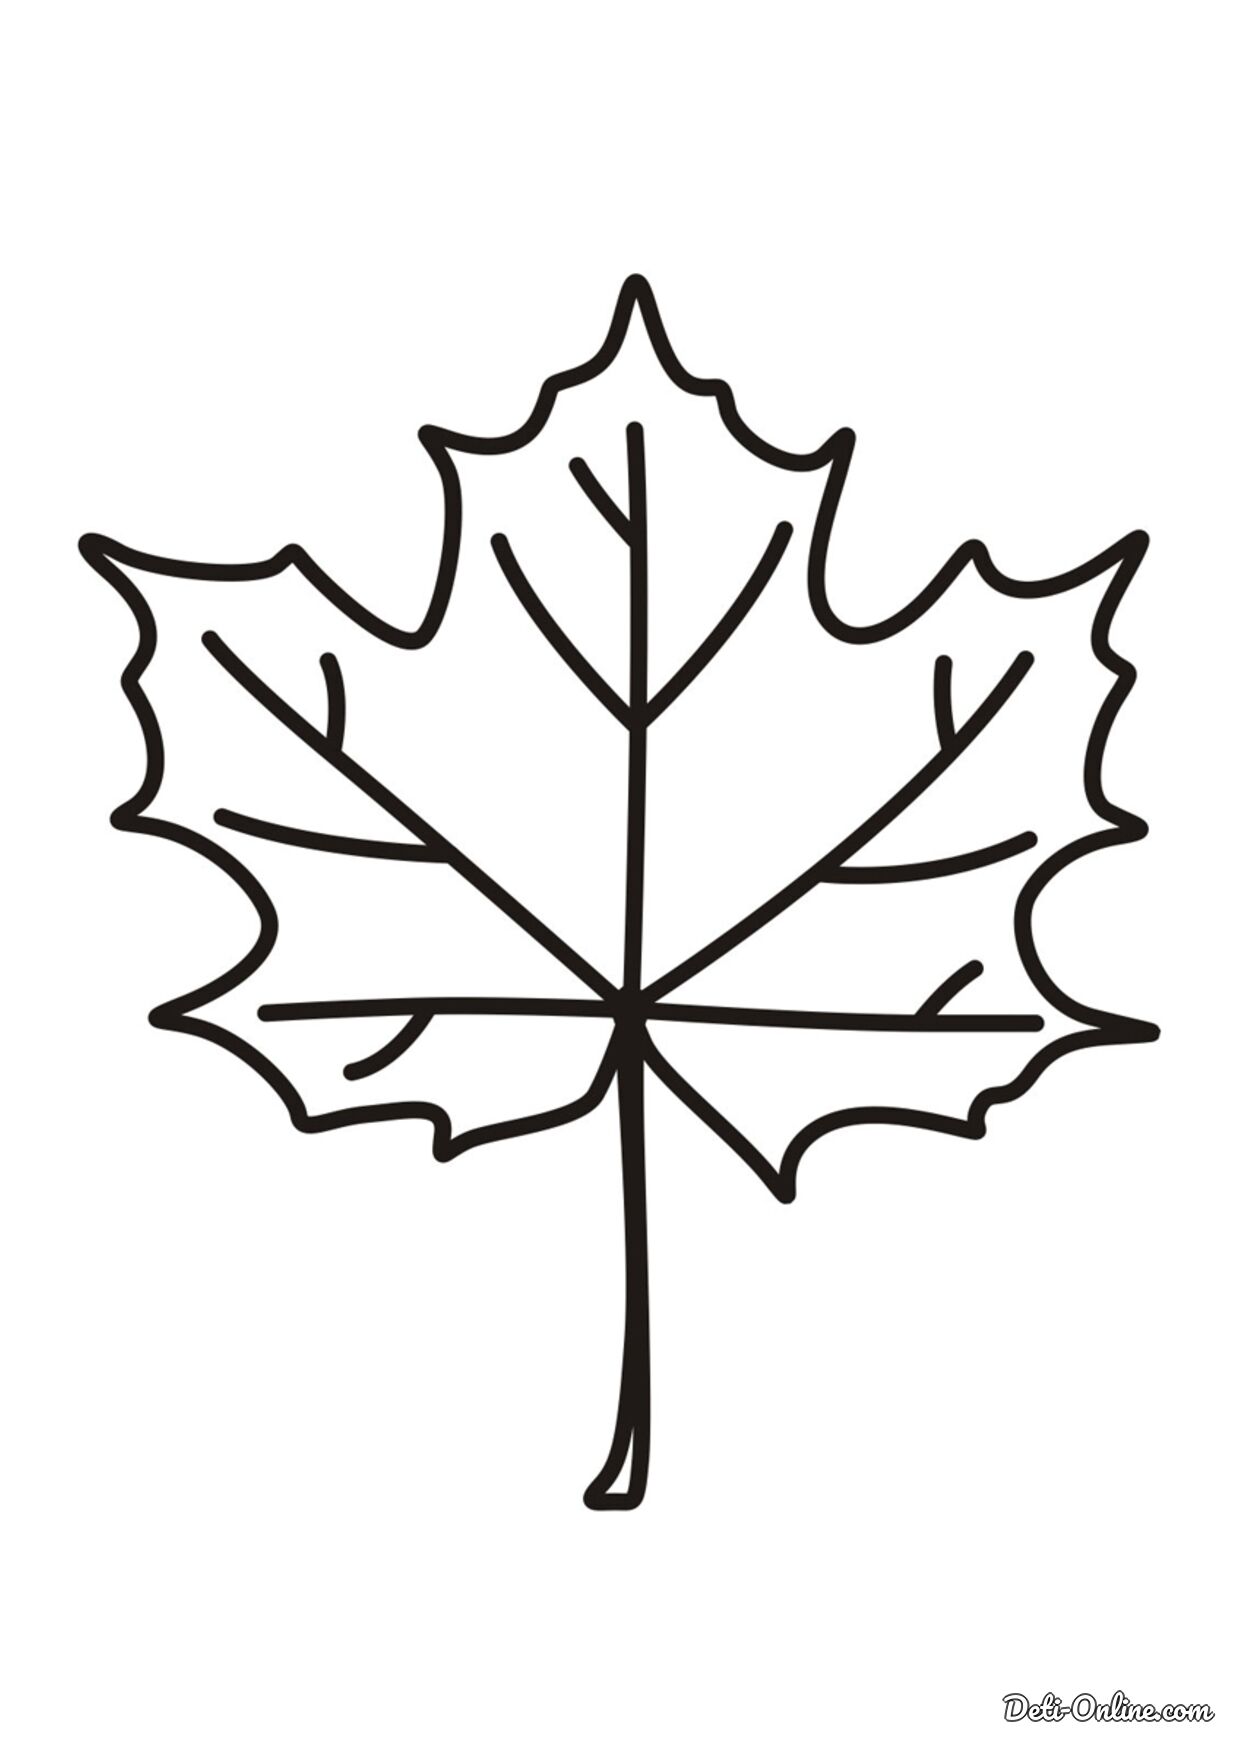 Maple leaf #24